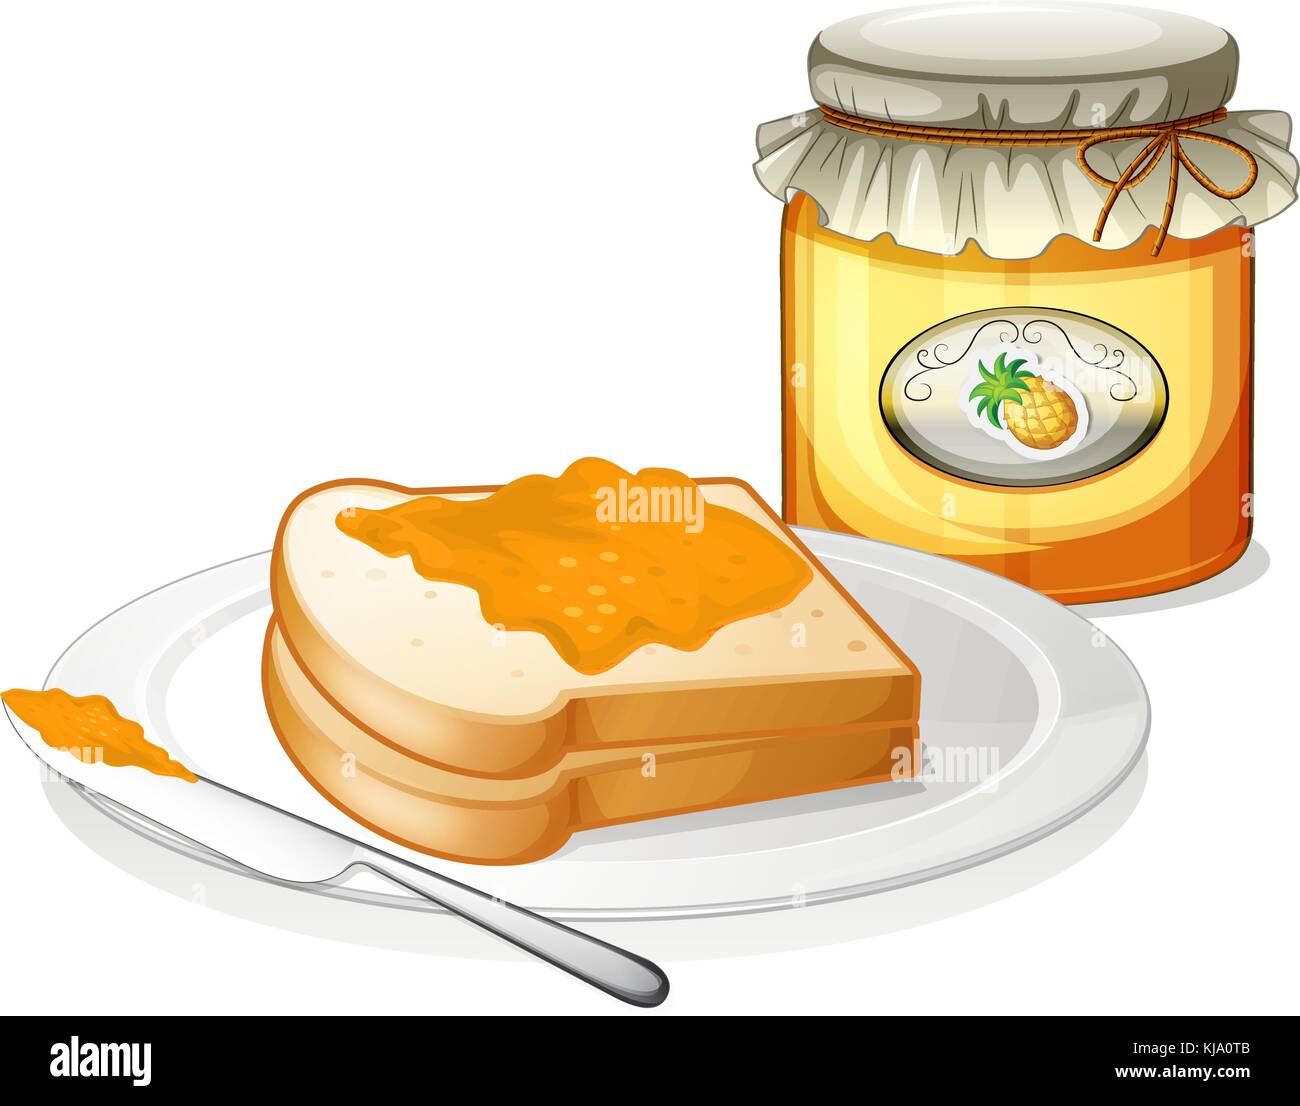 Illustrazione di una bottiglia di Ananas marmellate e un panino in una piastra su sfondo bianco Illustrazione Vettoriale